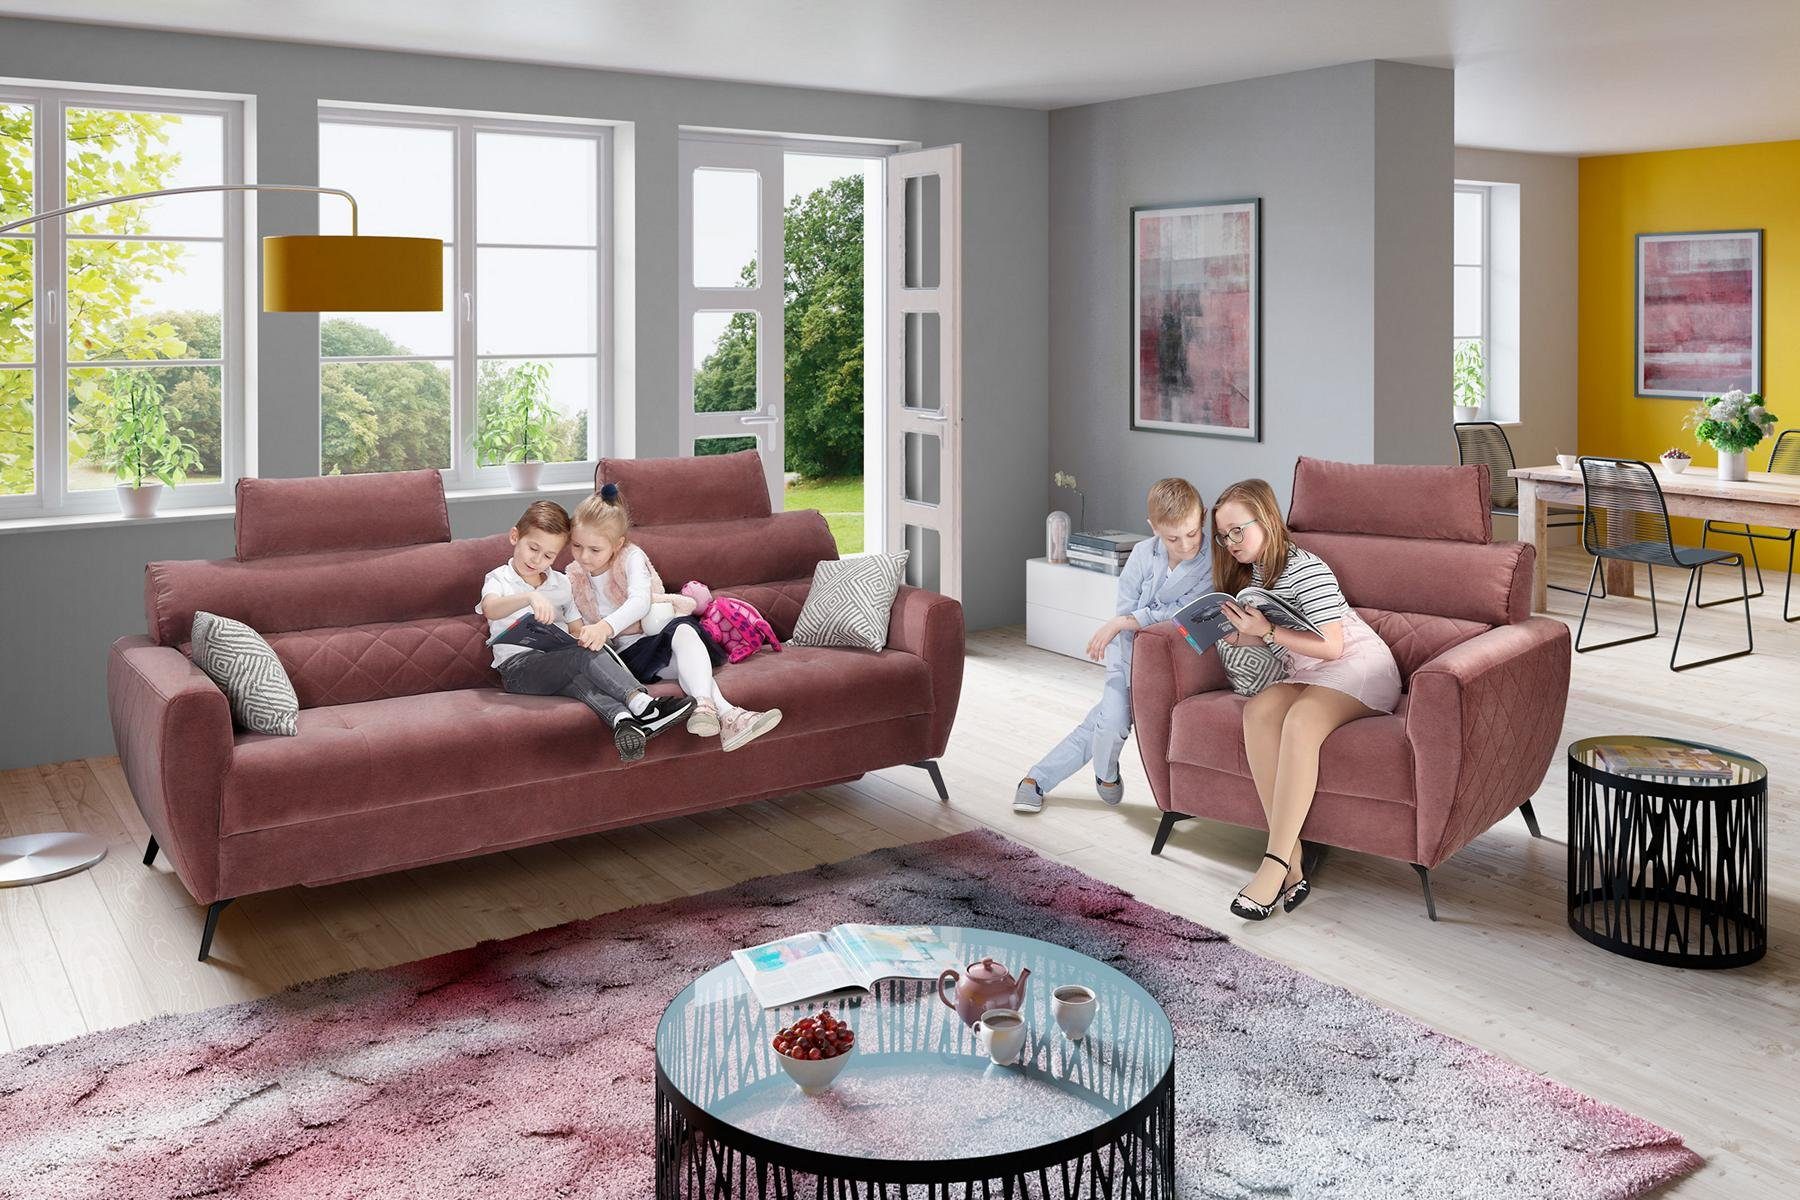 JVmoebel Wohnzimmer-Set, Leder Design Couch Polster Sitz 2+1+1 Sofa Garnituren Kunstleder Rot